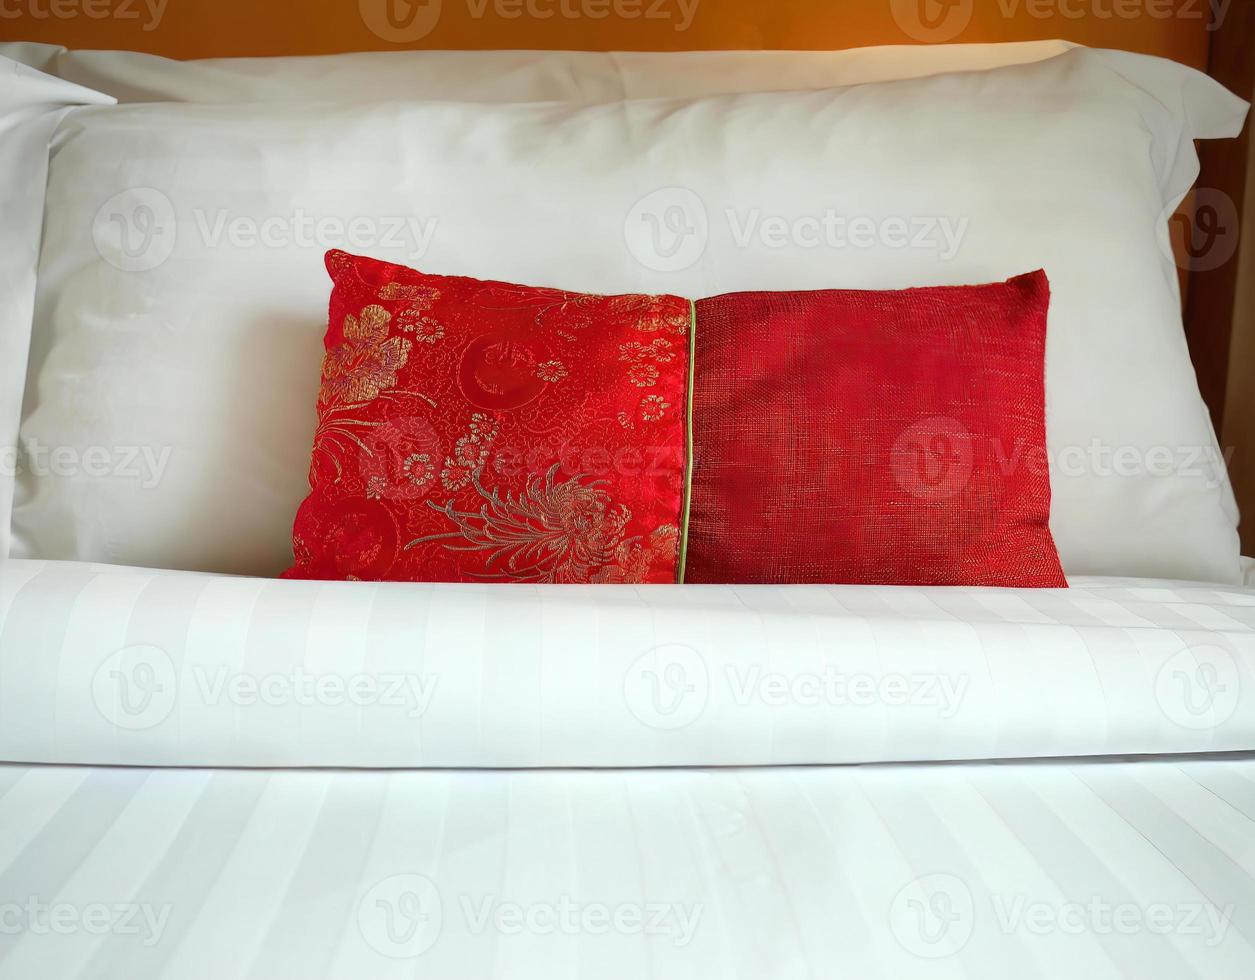 https://static.vecteezy.com/ti/photos-gratuite/p1/18908777-gros-plan-sur-un-coussin-de-dispersion-en-tissu-de-style-chinois-rouge-oreiller-de-dossier-place-devant-des-oreillers-blancs-doubles-sur-le-lit-de-l-hotel-service-de-couverture-avec-espace-de-copie-photo.JPG